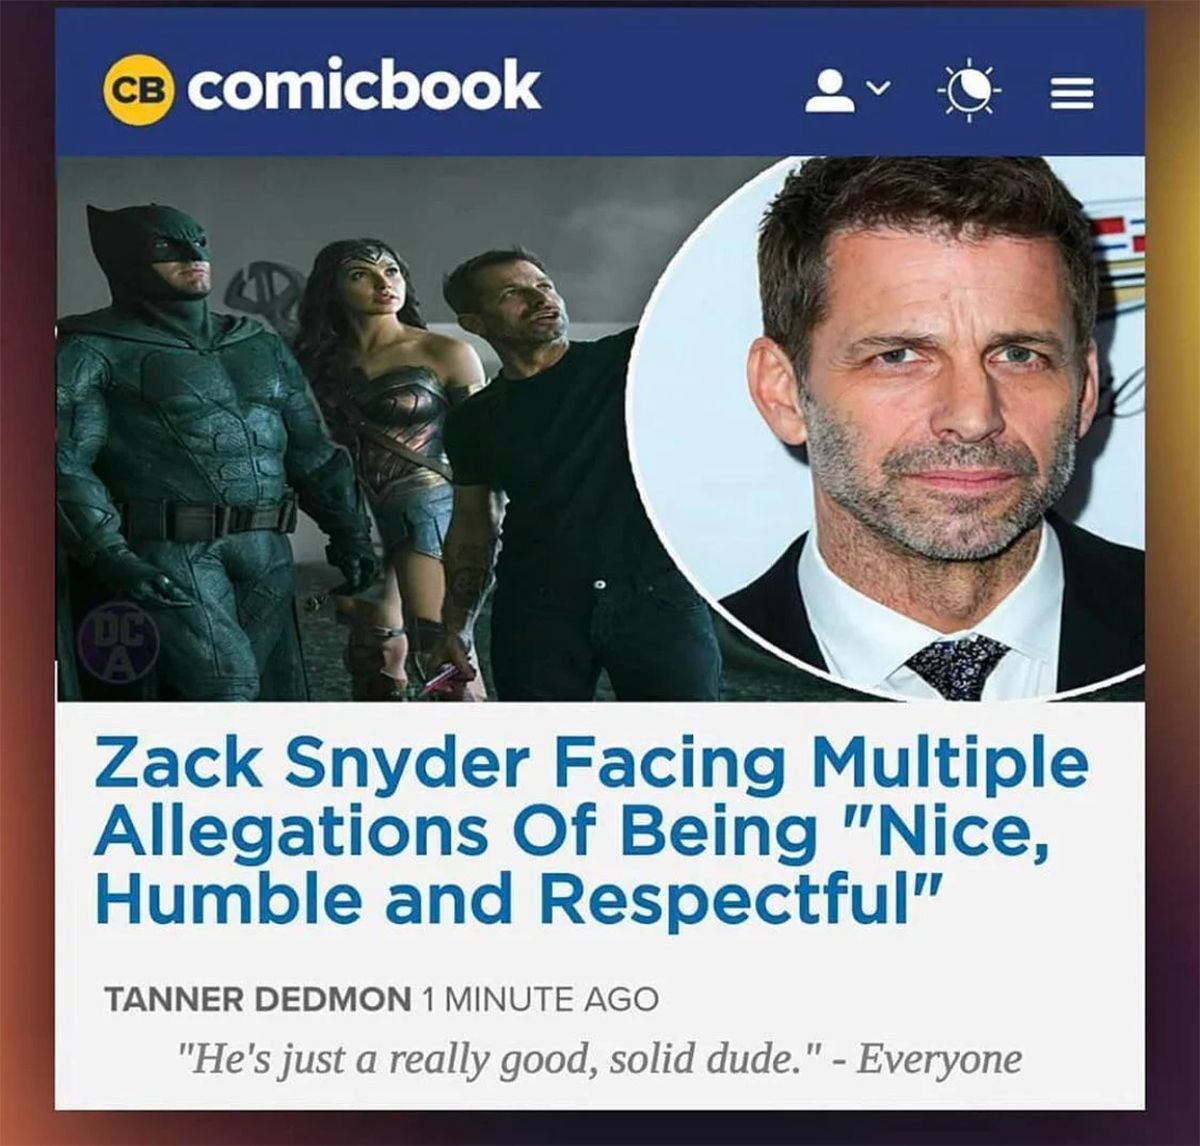  Zack Snyder Allegations